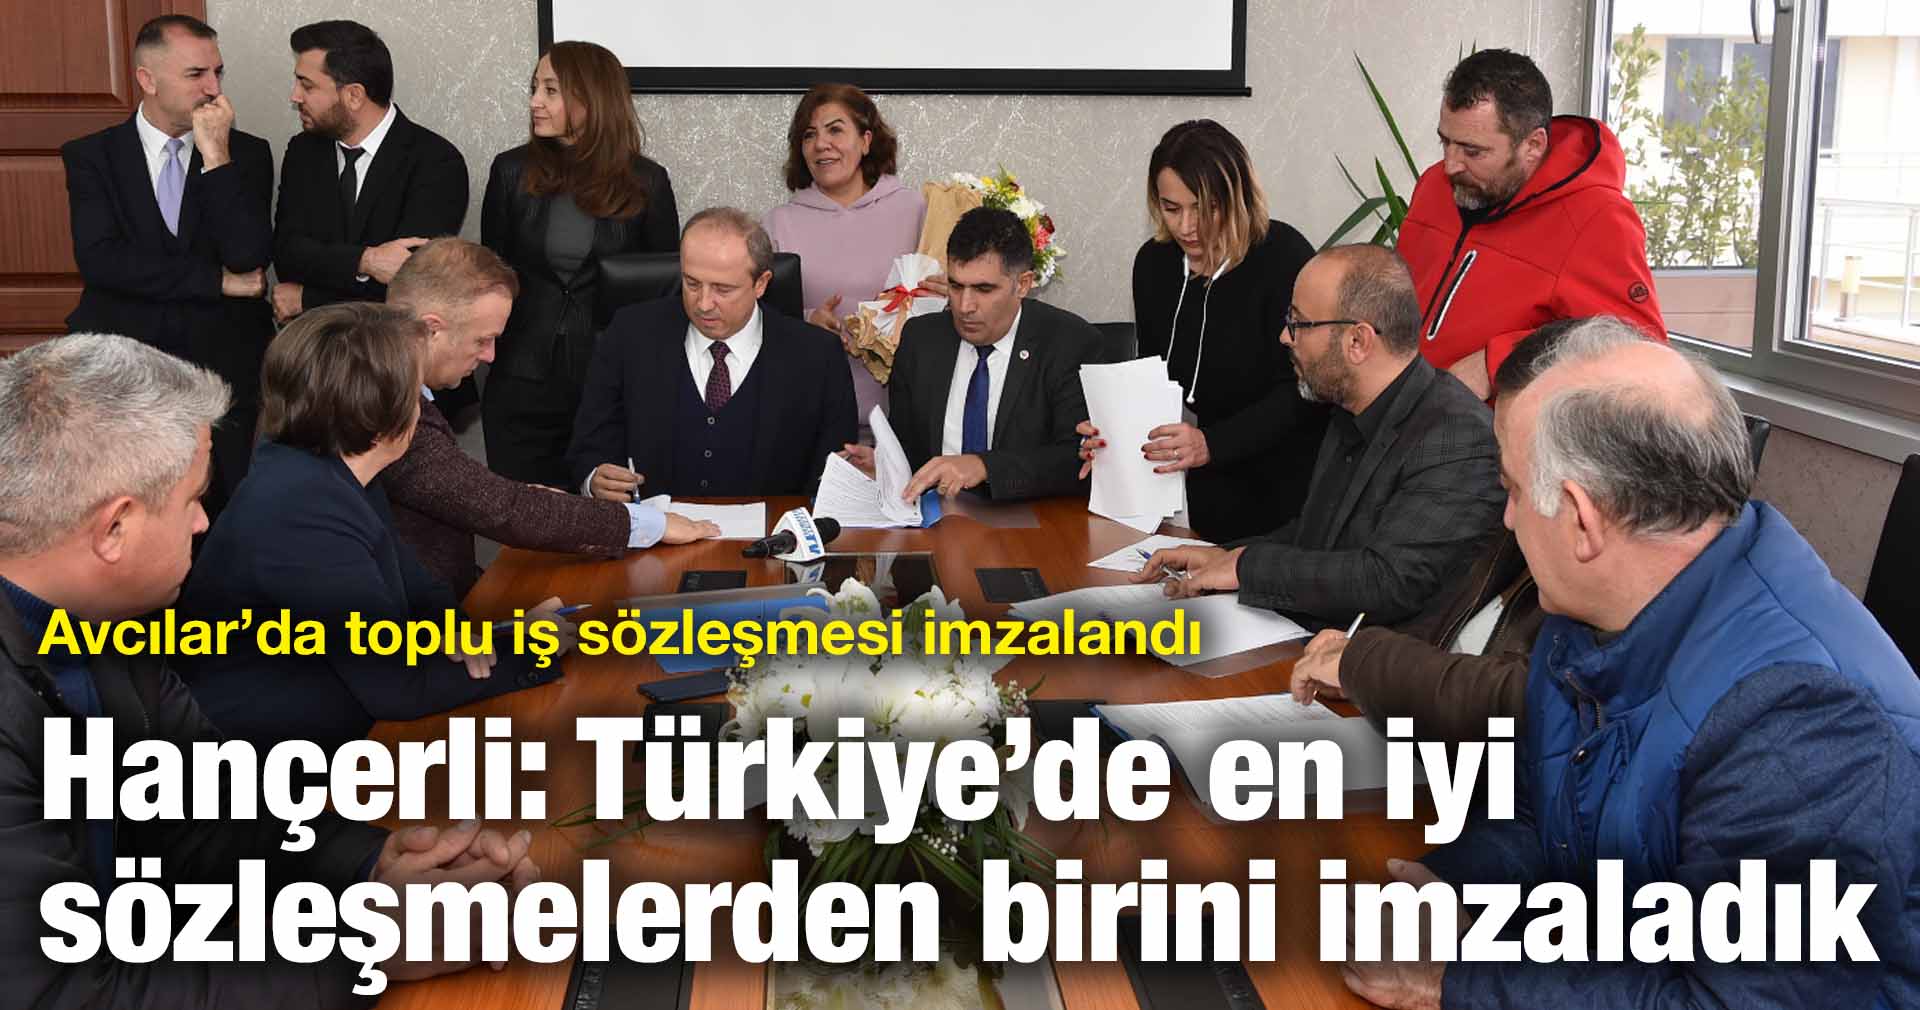 Hançerli: Türkiye’de en iyi sözleşmelerden birini imzaladık